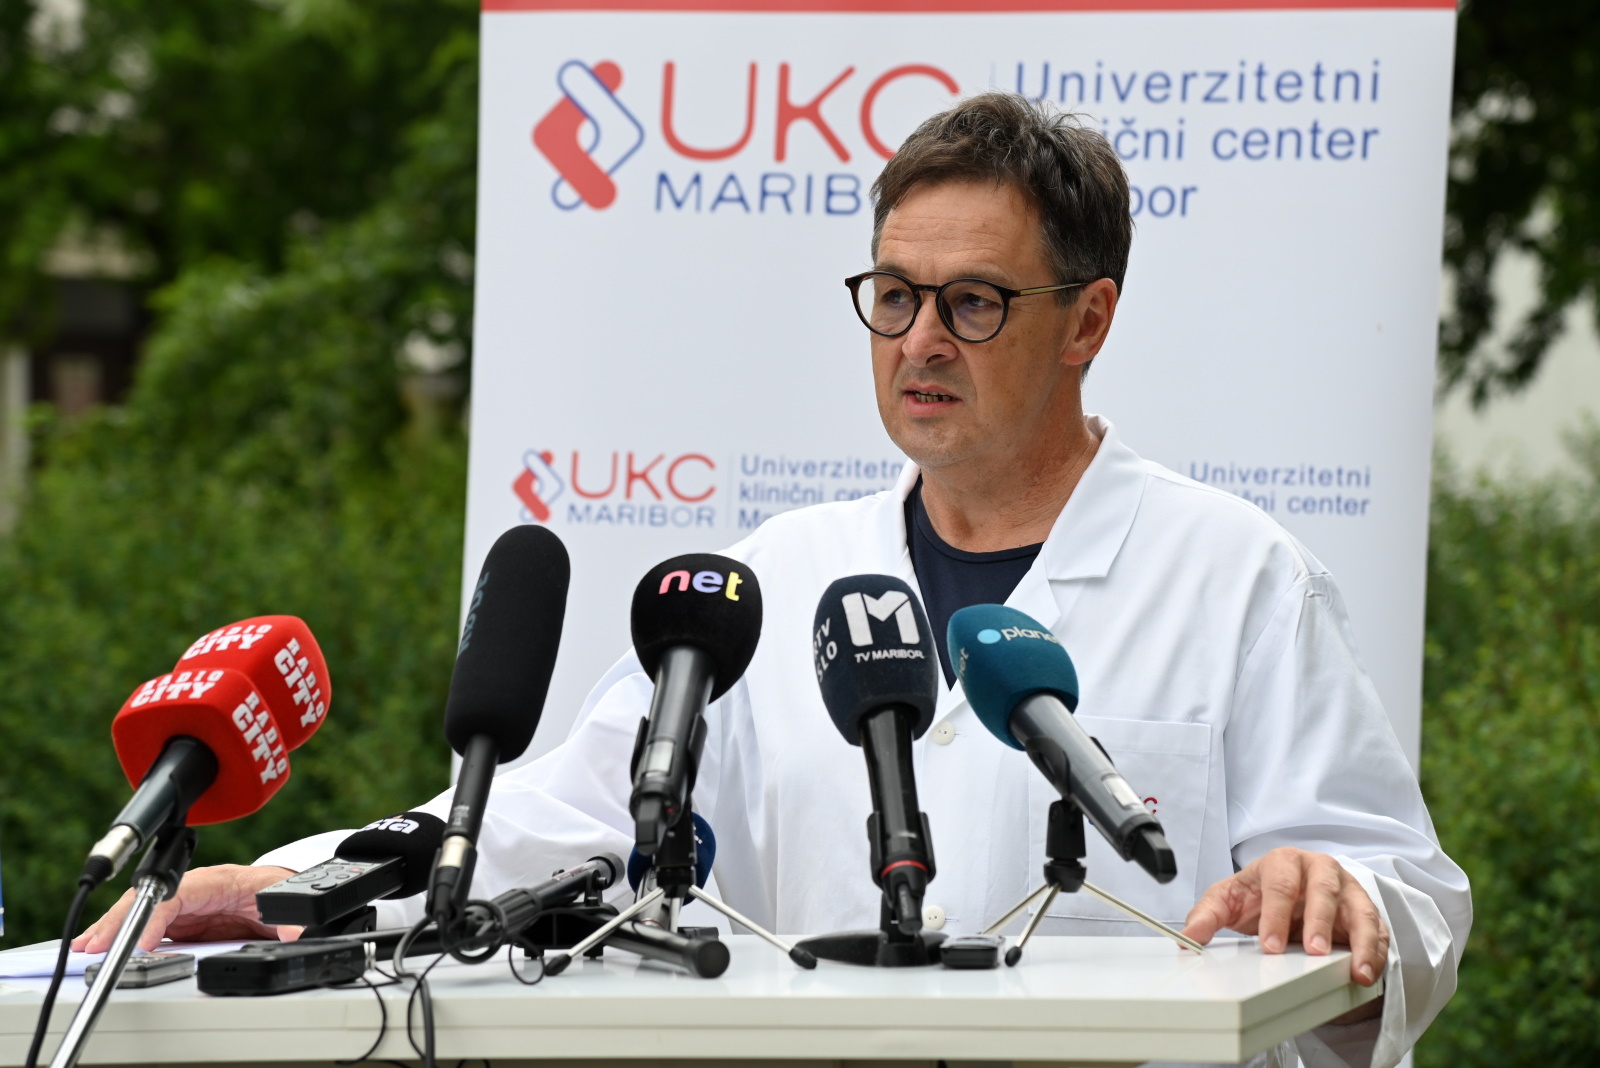 V UKC Maribor se stanje normalizira, zaostanke bi lahko odpravili v letu dni